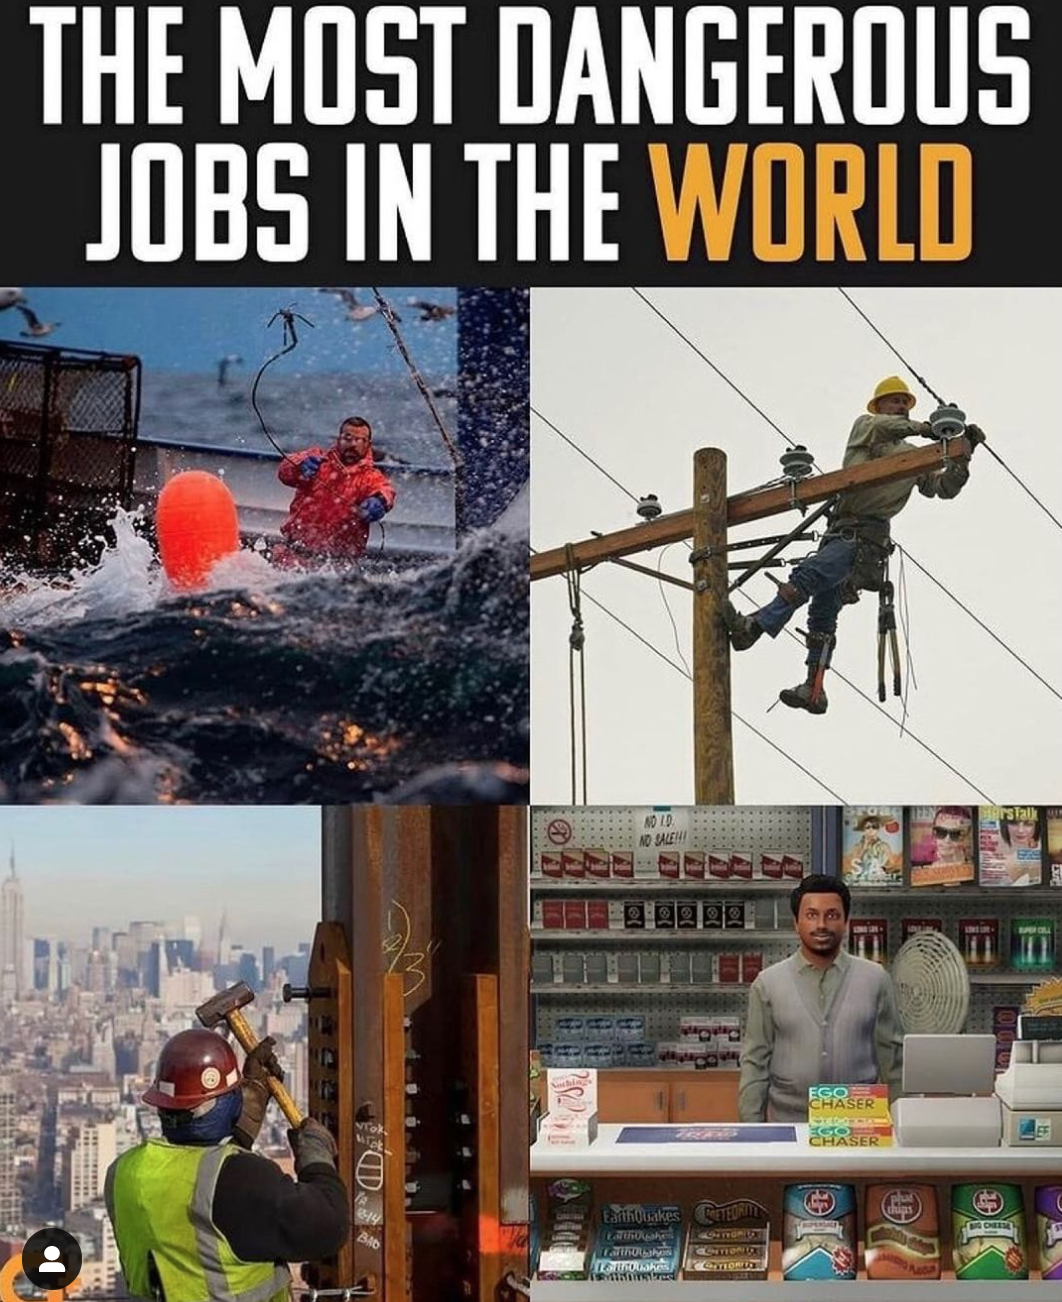 funny gaming memes - most dangerous jobs meme - The Most Dangerous Jobs In The World Id